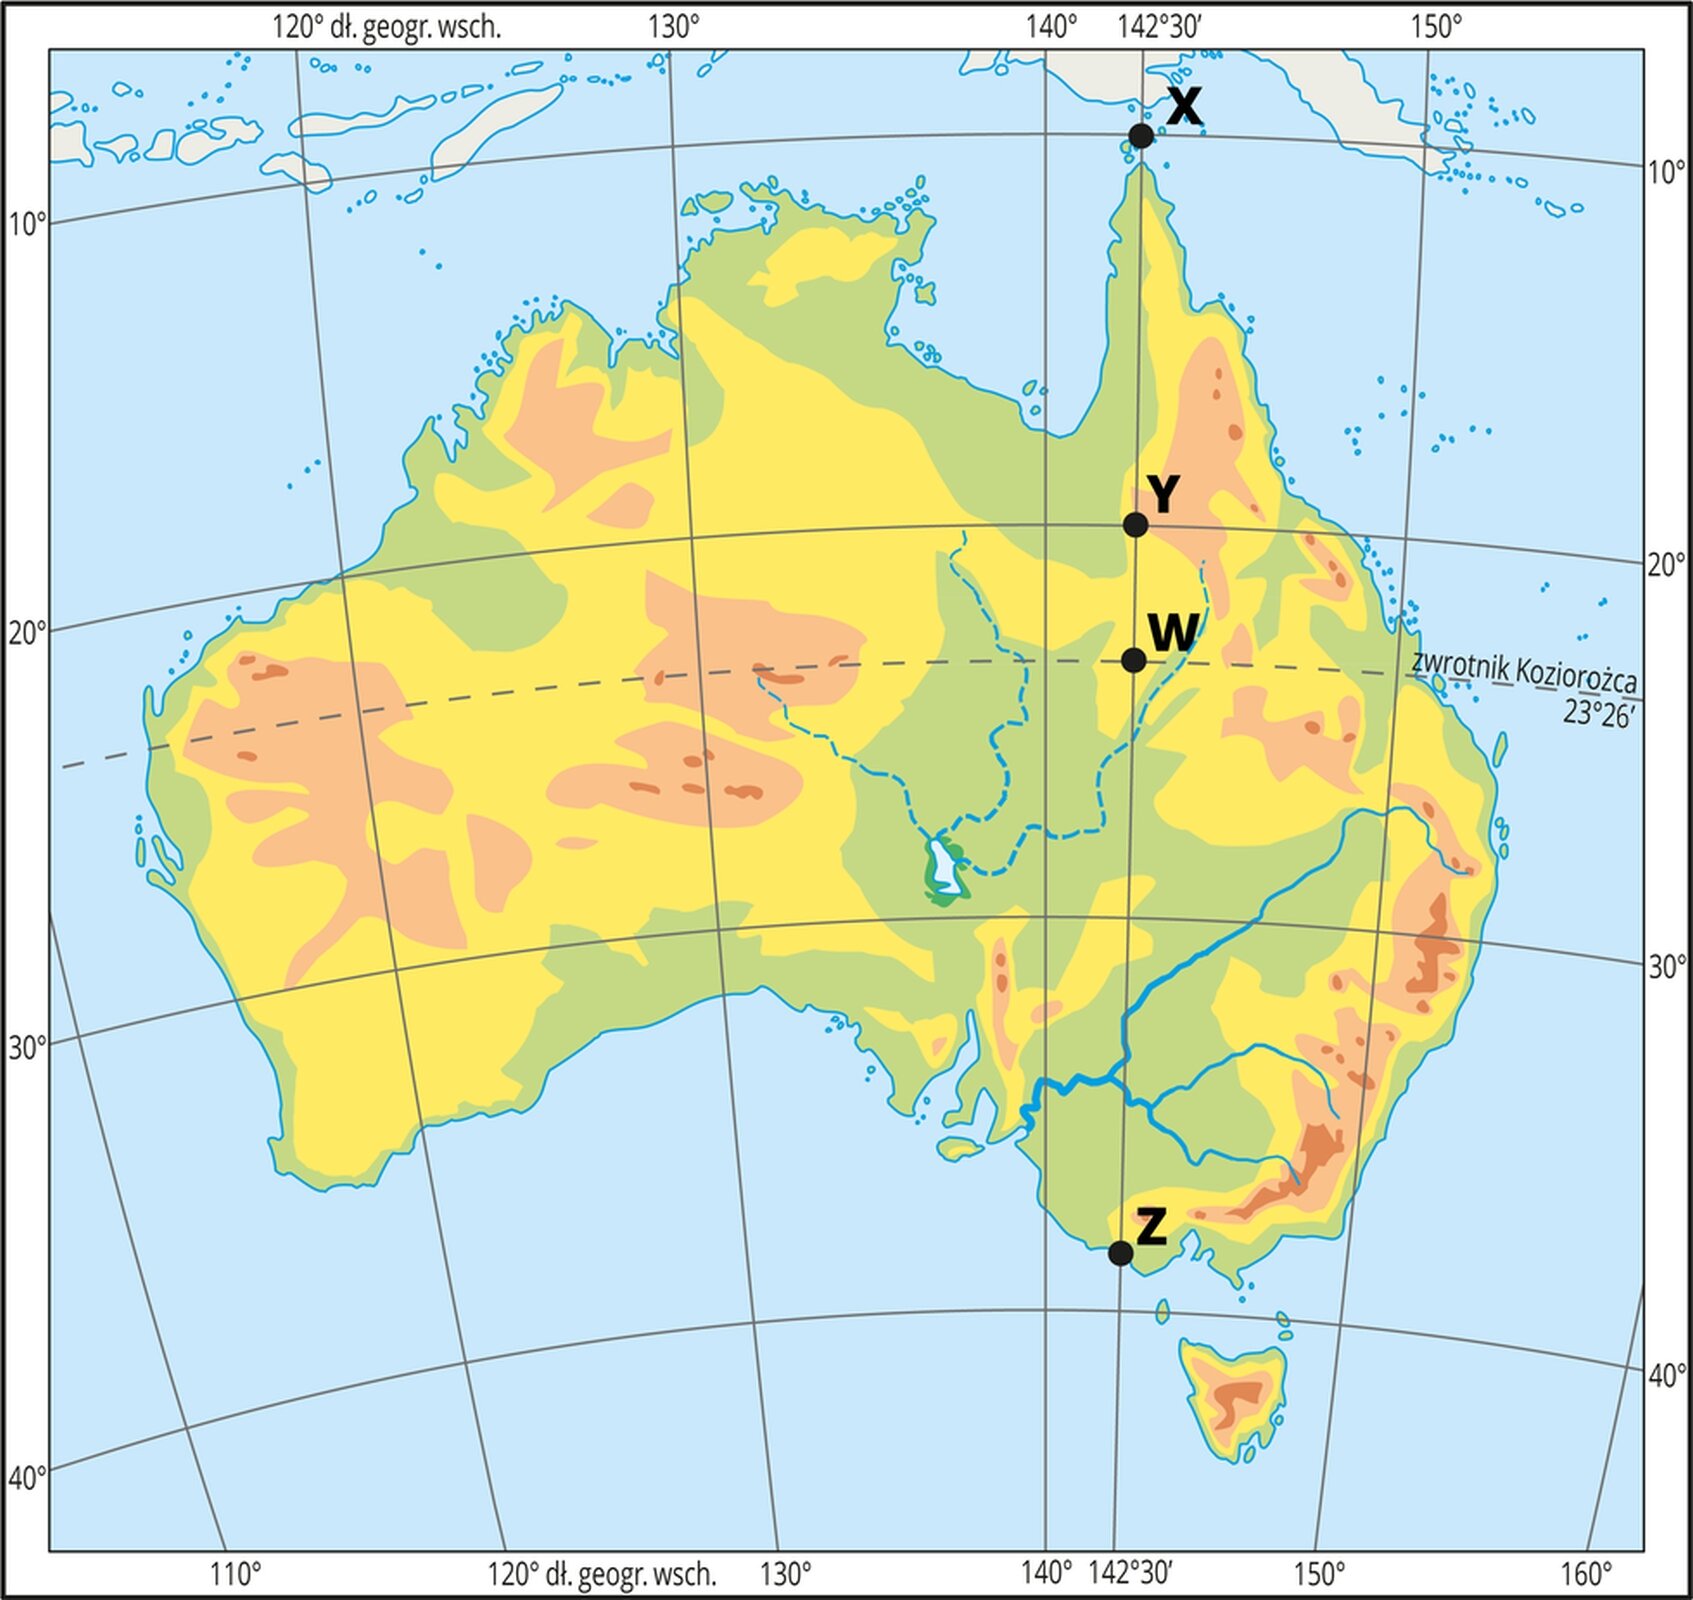 Mapa hipsometryczna Australii. Dookoła naniesiono ramkę z wartościami długości i szerokości geograficznej. Na mapie siatka południków i równoleżników. Na mapie literami W, X, Y, Z oznaczono cztery charakterystyczne punkty. Wszystkie z nich znajdują się na sto czterdziestym drugim stopniu i trzydziestej minucie długości geograficznej wschodniej. Punkt oznaczony literą W znajduje się na zwrotniku Koziorożca, czyli dwudziestym trzecim stopniu i dwudziestej szóstej minucie szerokości geograficznej południowej. Punkt oznaczony literą X znajduje się na dziesiątym stopniu szerokości geograficznej południowej. Punkt oznaczony literą Y znajduje się na dwudziestym stopniu szerokości geograficznej południowej. Punkt oznaczony literą Z znajduje się na trzydziestym dziewiątym stopniu szerokości geograficznej południowej.